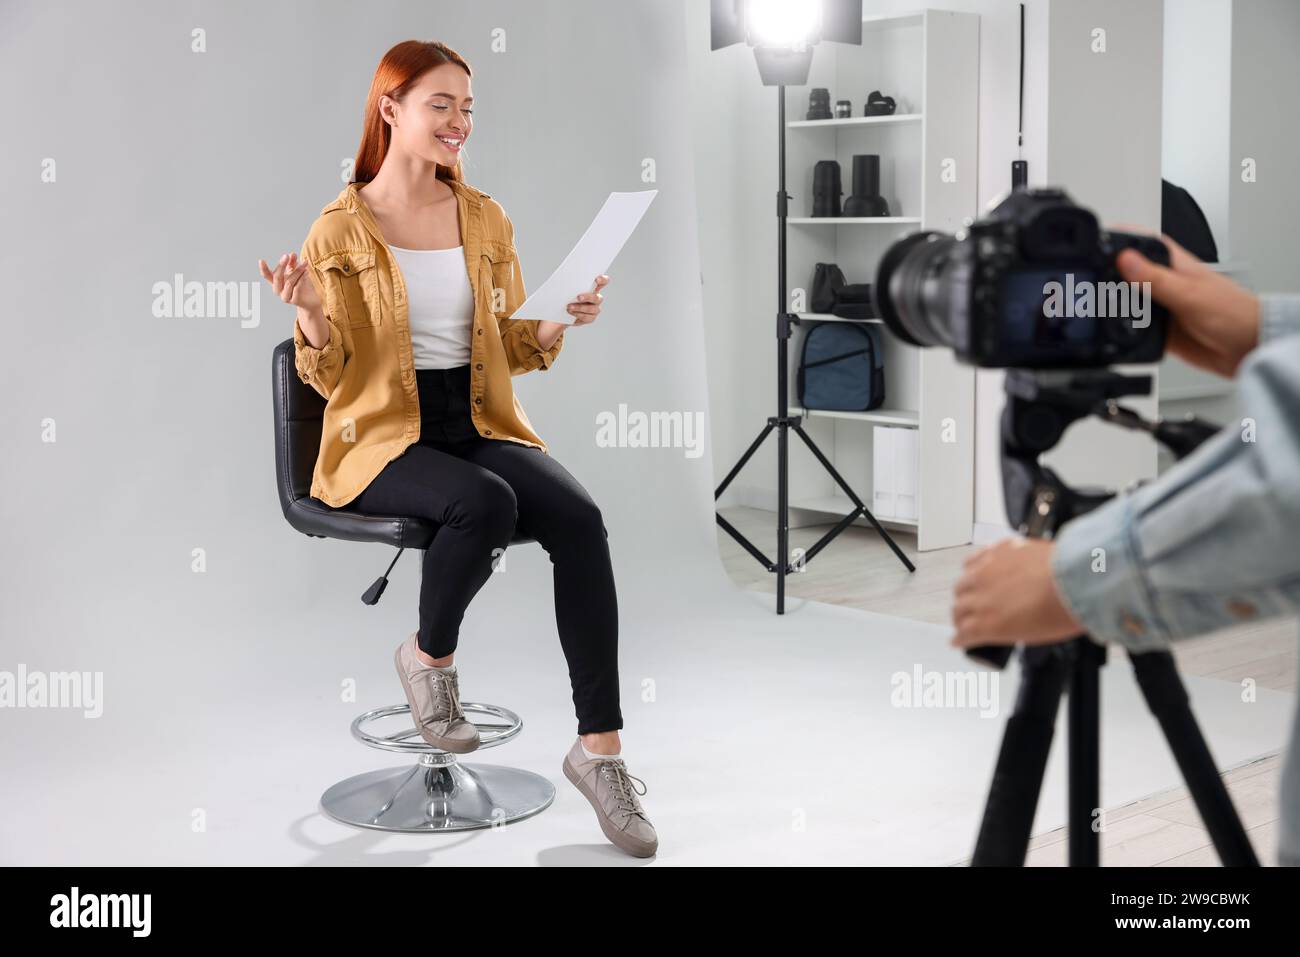 Appel de casting. Femme avec script jouant pendant que le caméraman la filme sur fond gris clair en studio Banque D'Images